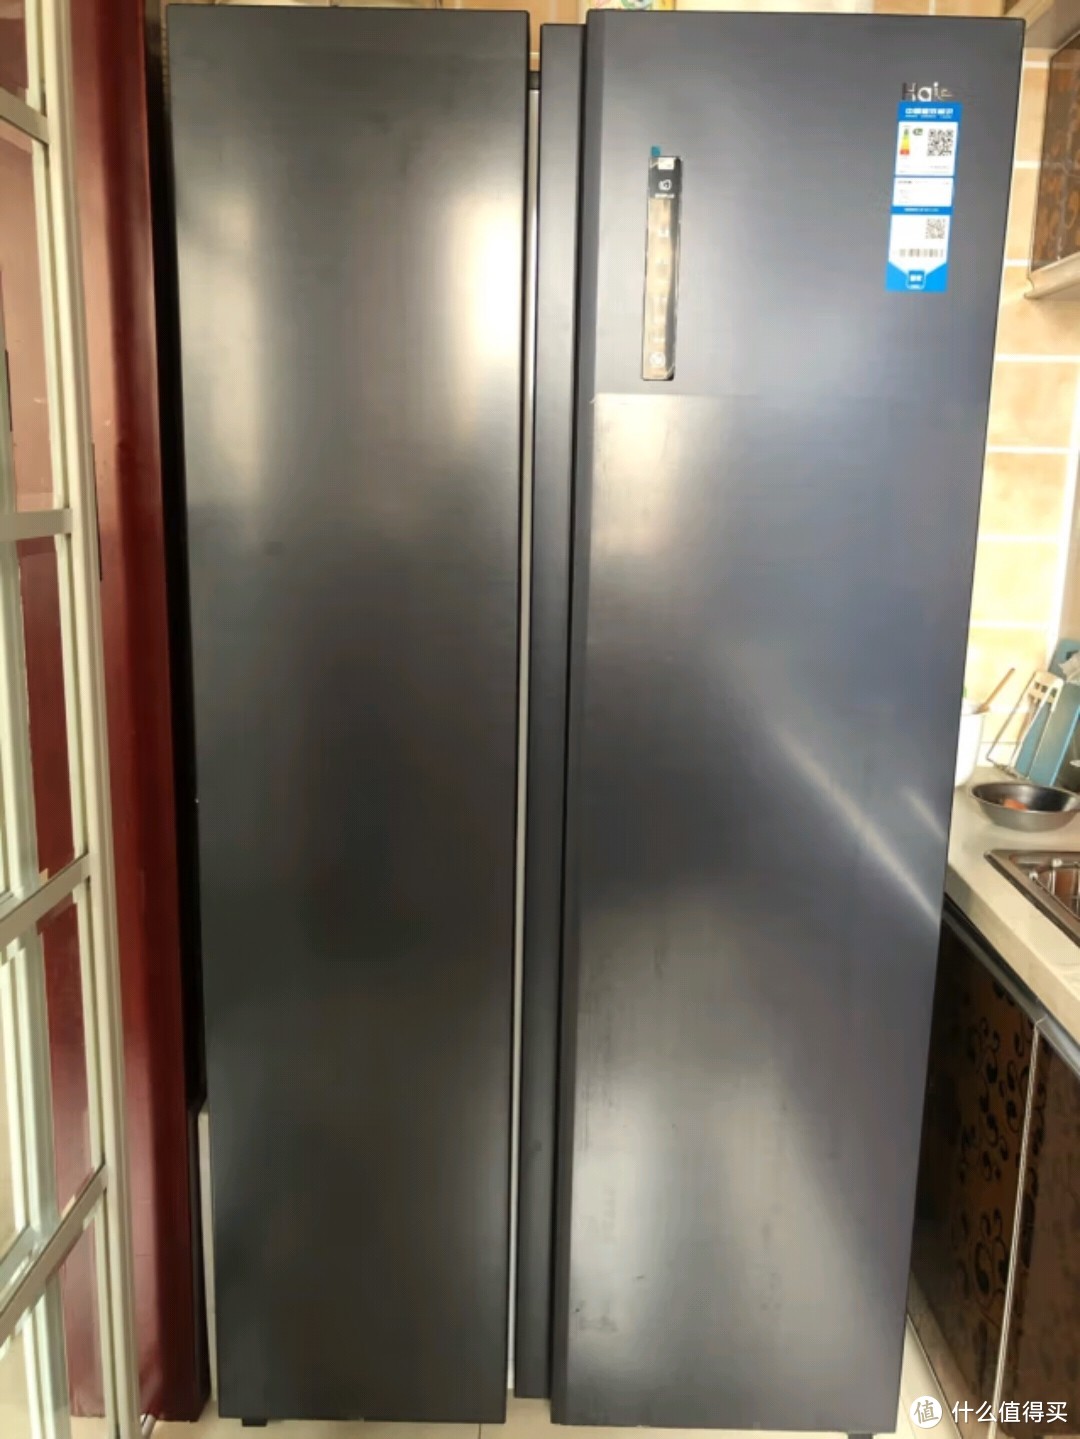 我家常用的大家电冰箱的选择